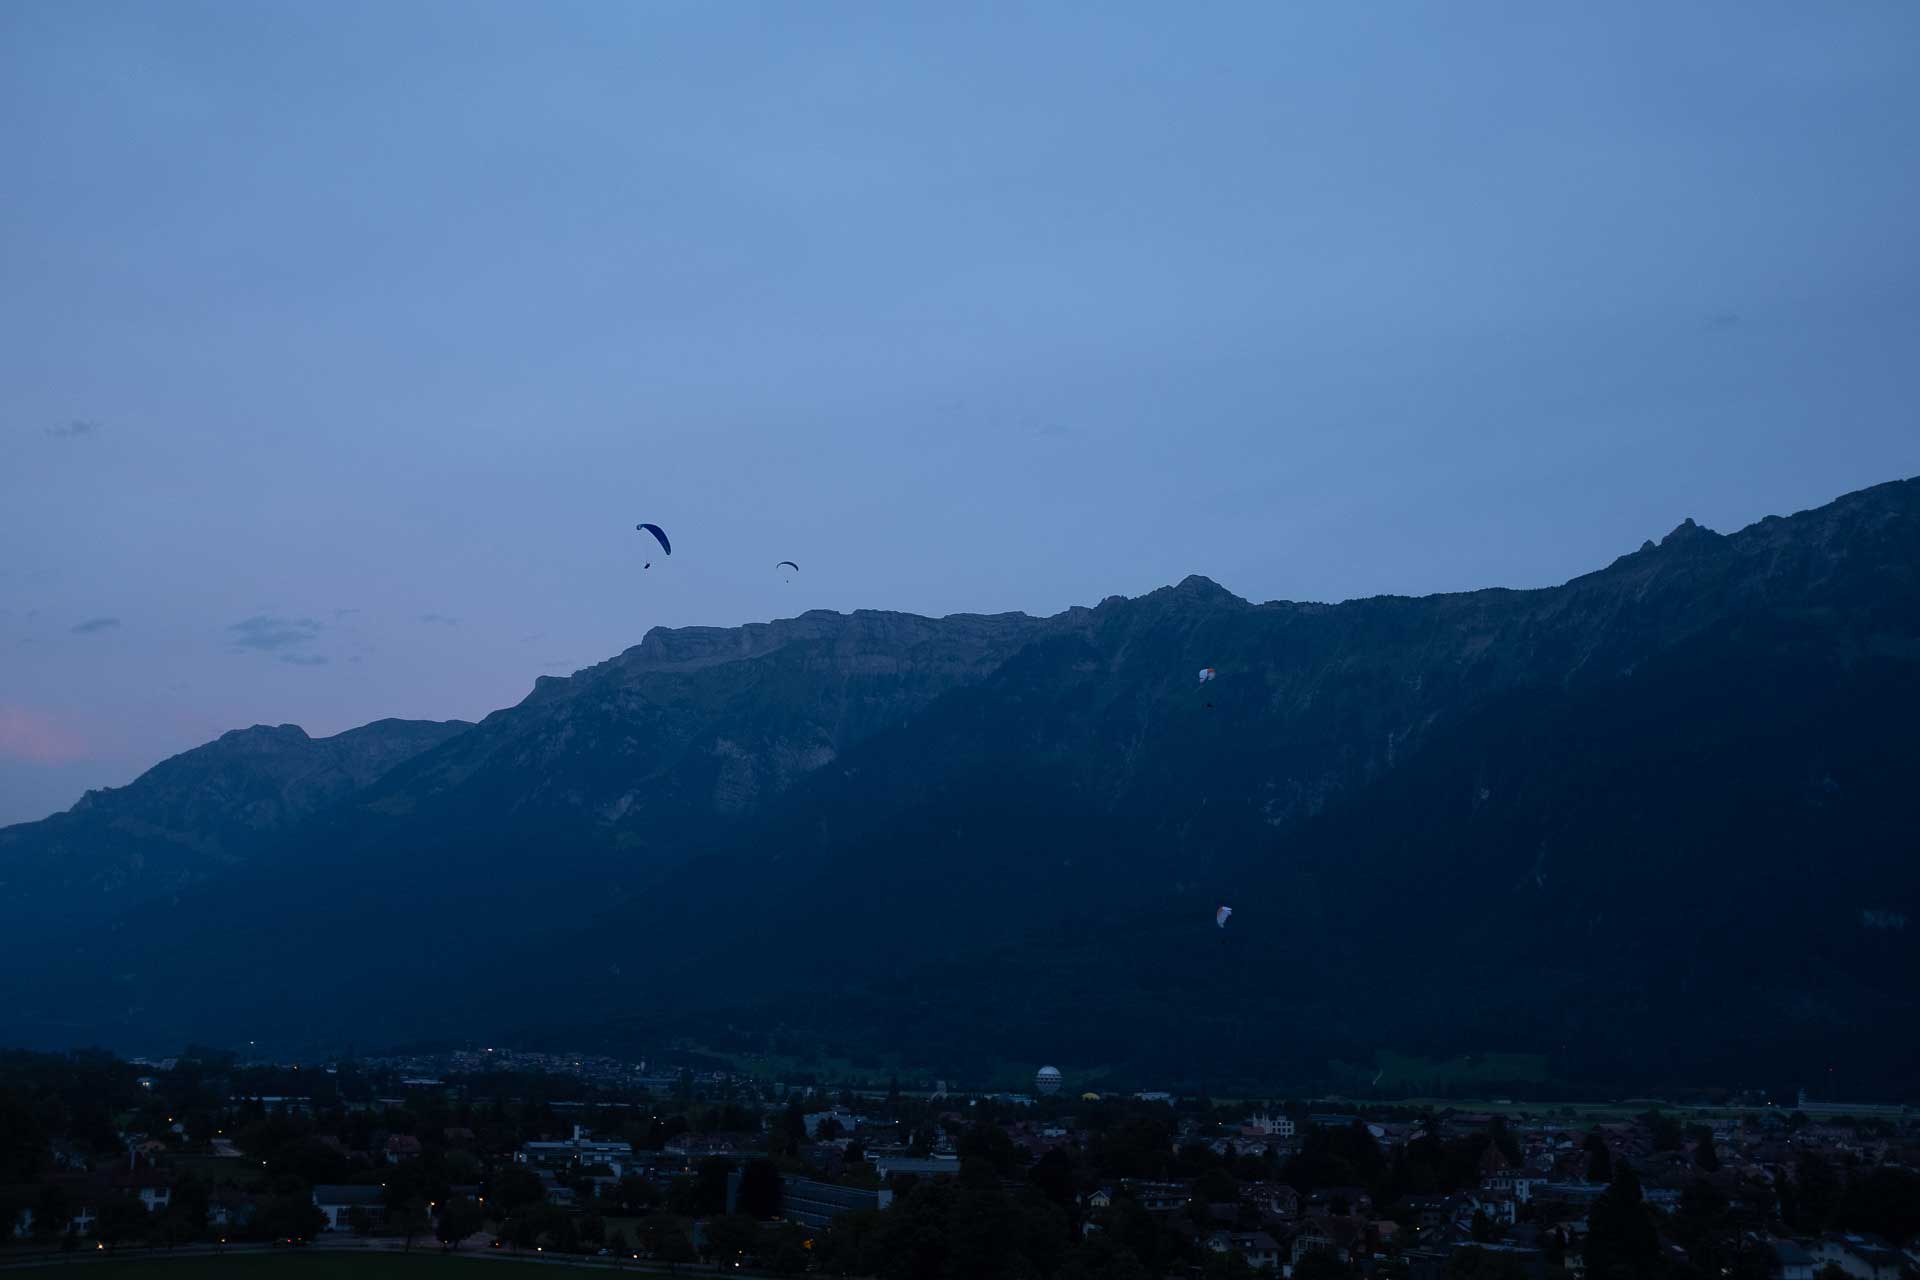 Paragliding in Interlaken